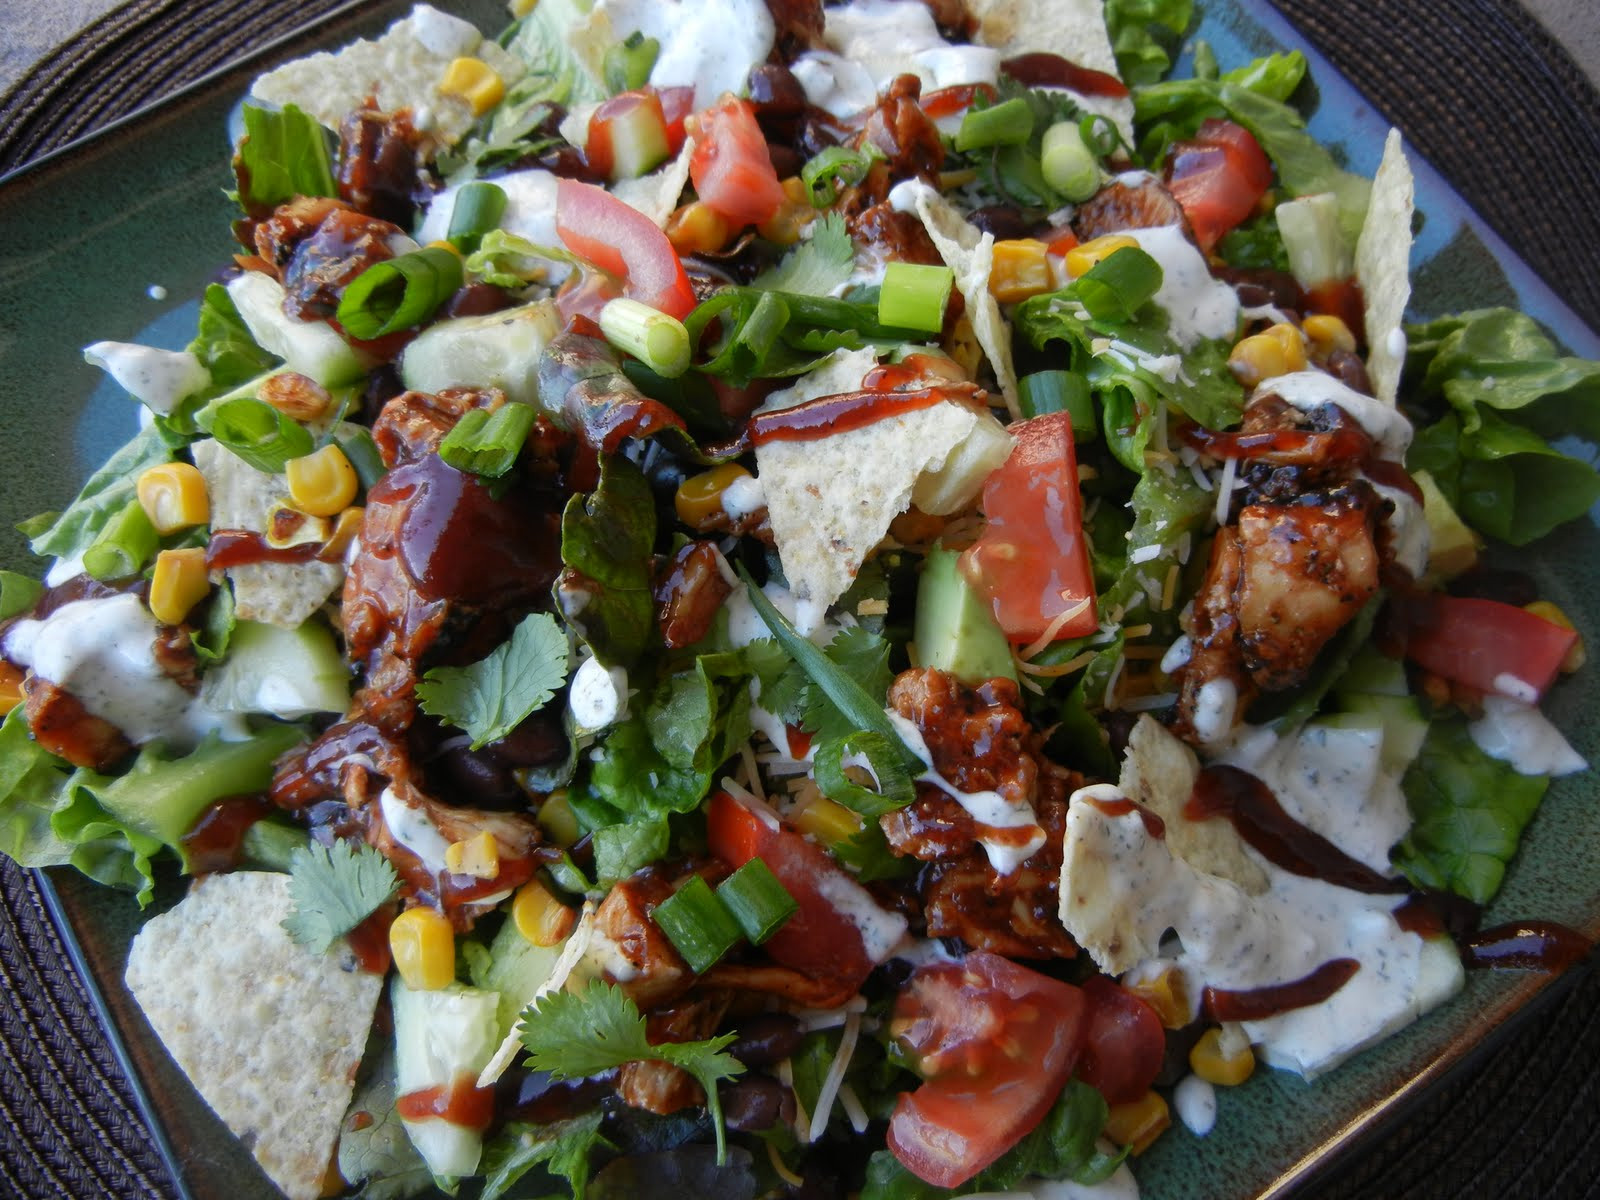 Cpk Bbq Chicken Salad
 California Pizza Kitchen BBQ Chicken Chopped Salad